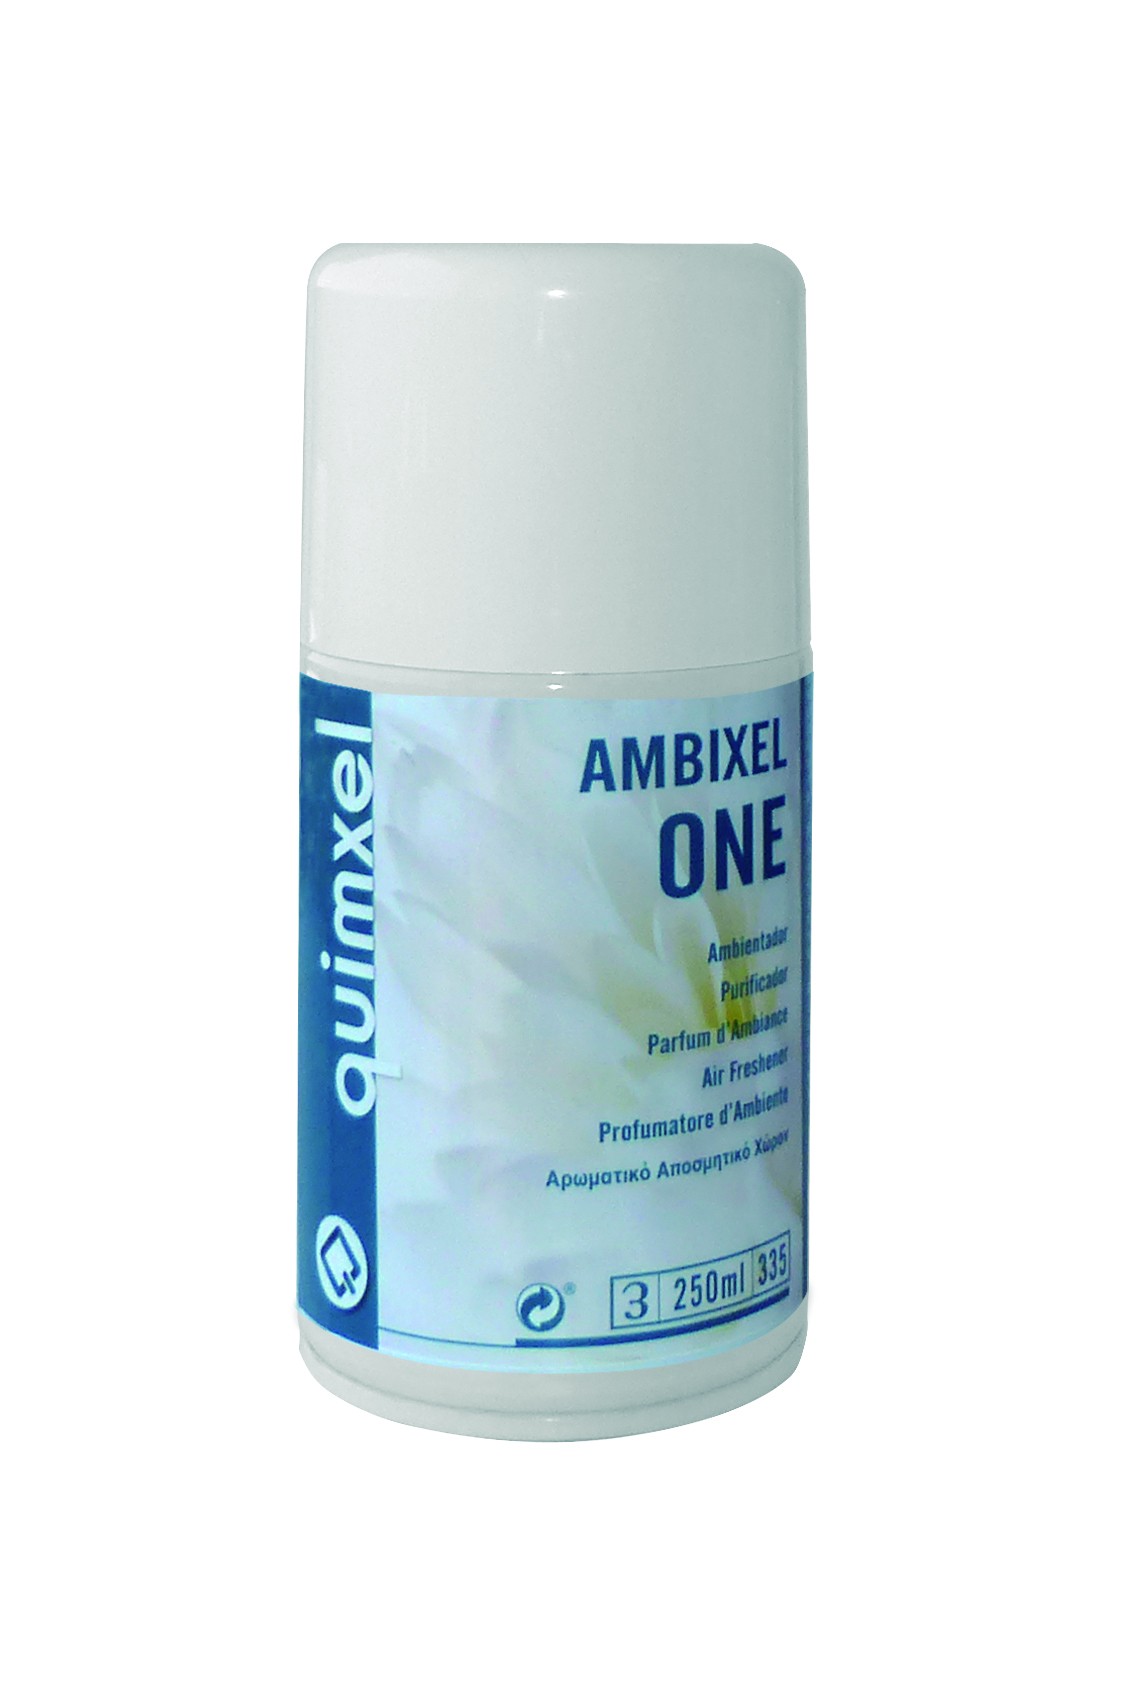 Ambientador Spray, Ambixel ONE 250ml.